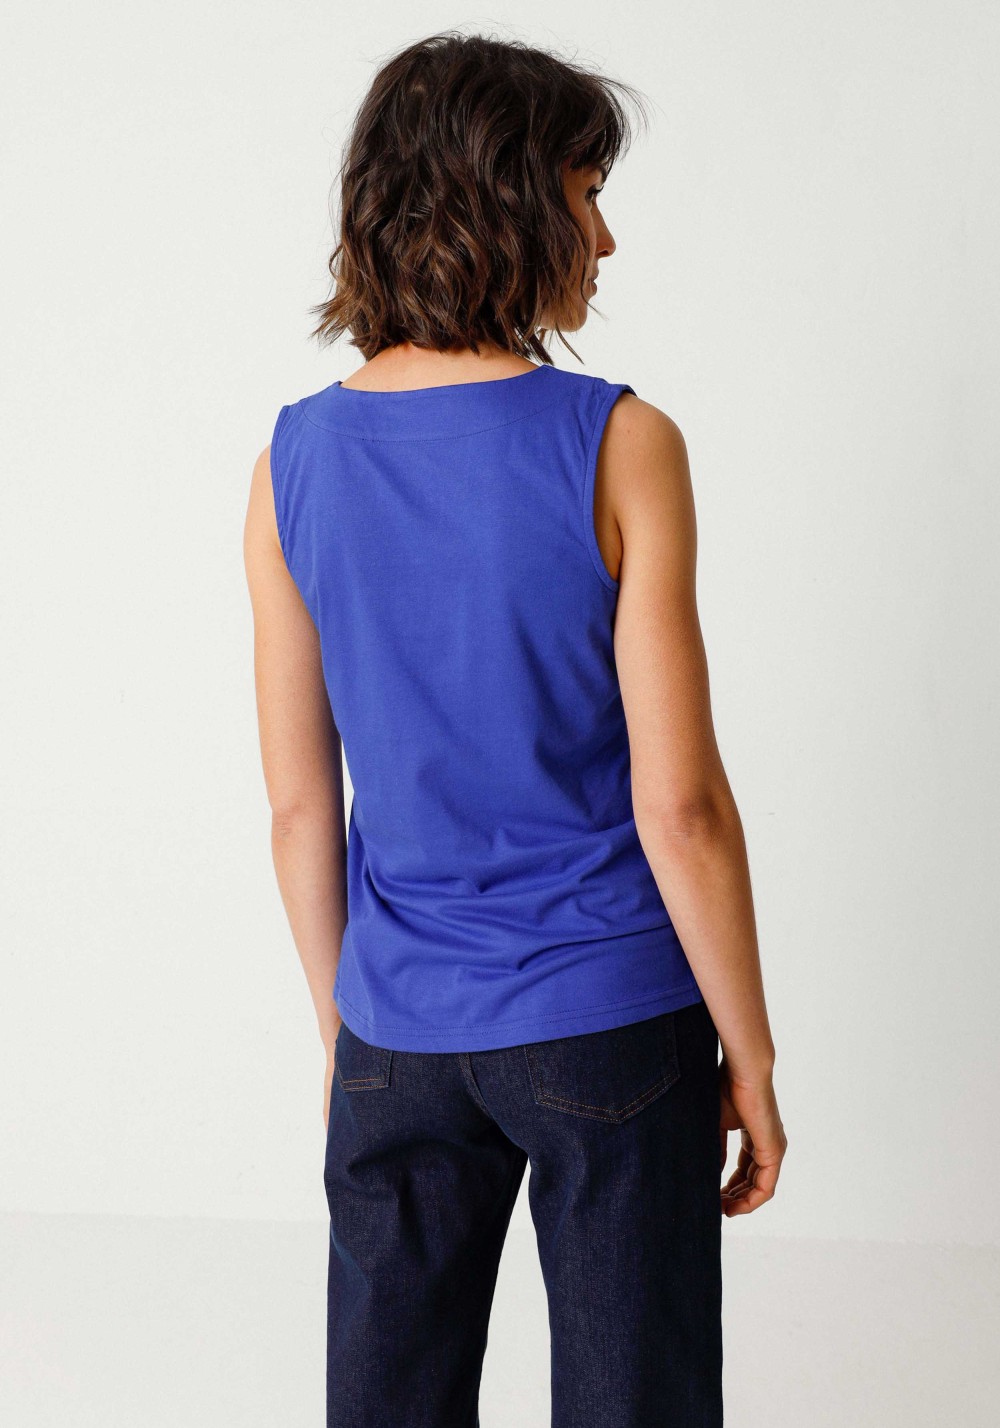 SKFK - T-Shirt Hamabost Royal Blue